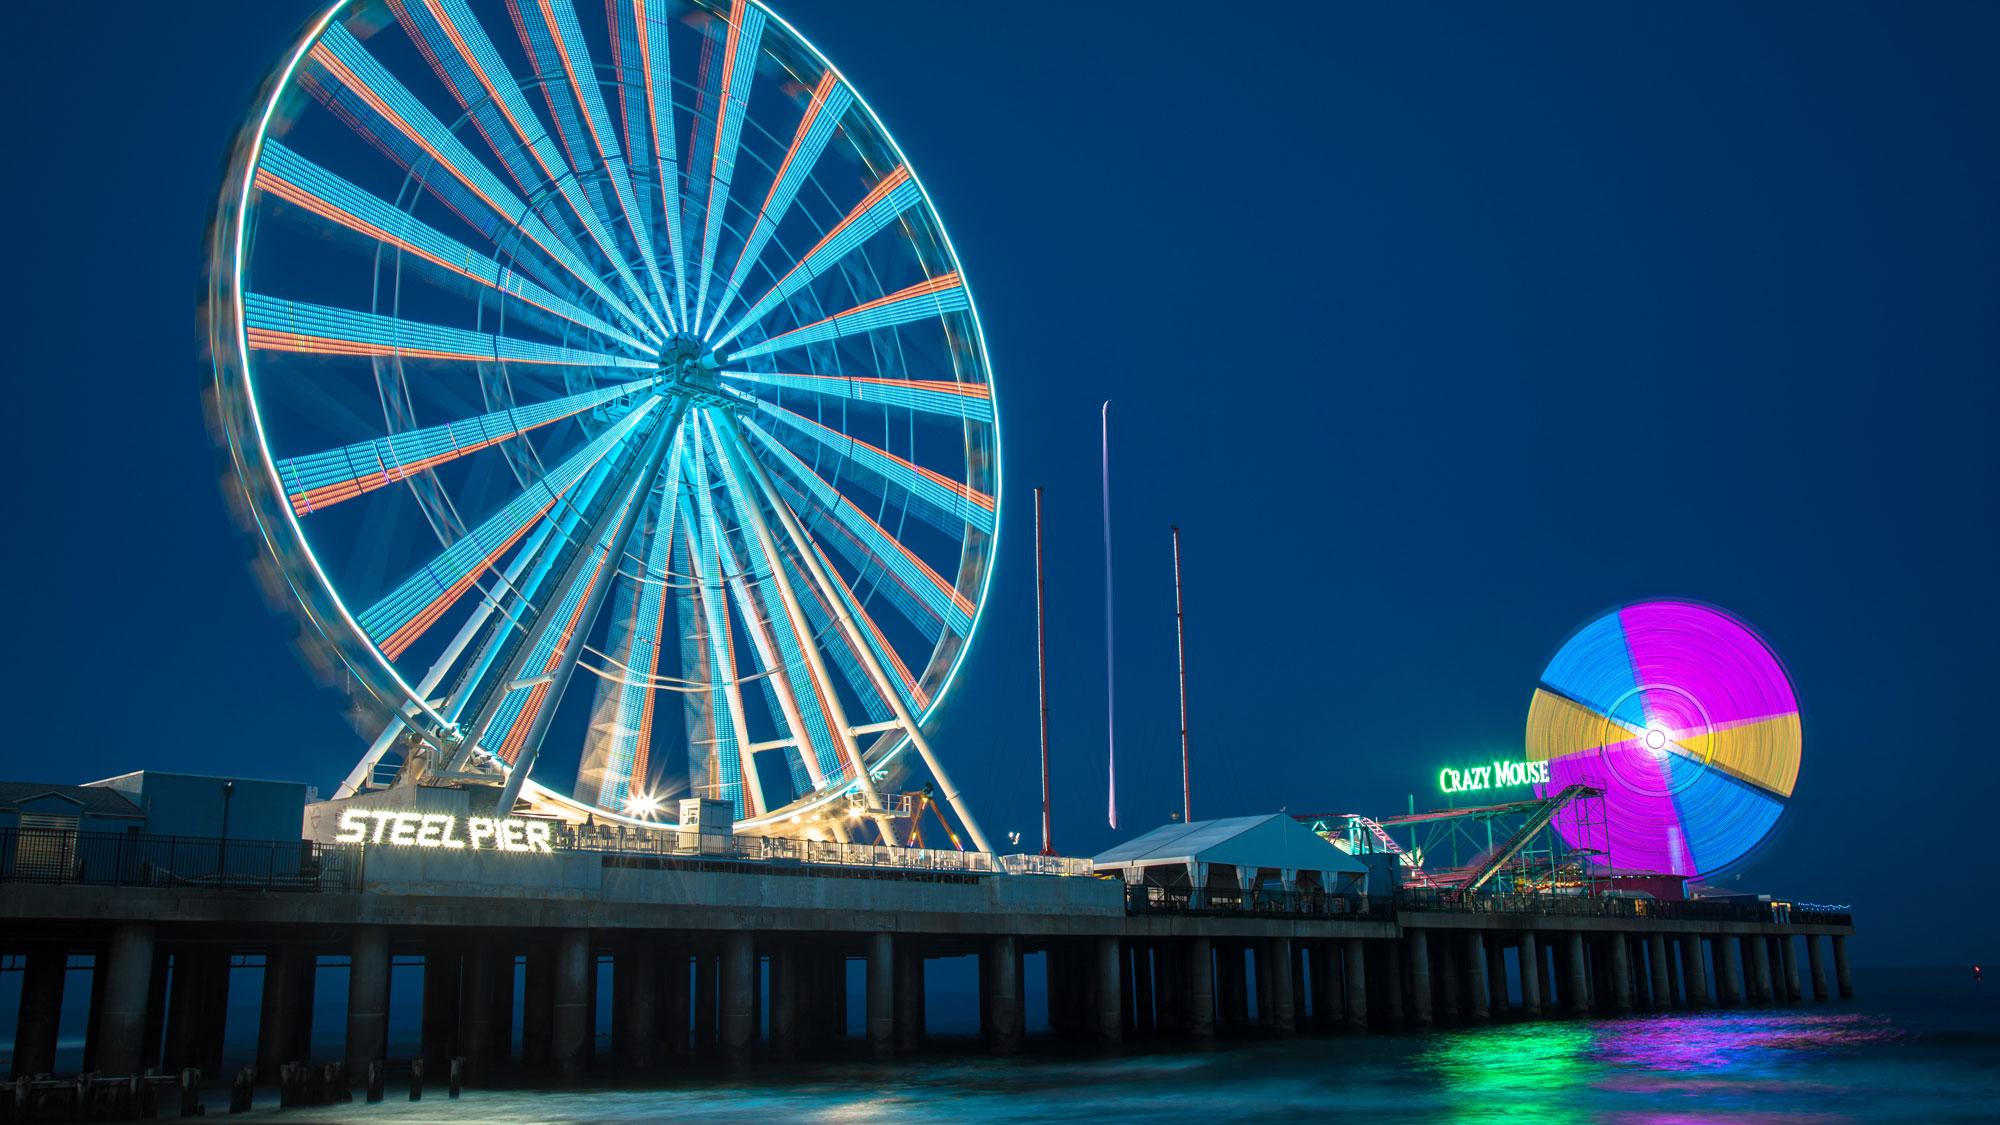 Steel Pier Ferris Wheel at Atlantic City Boardwalk